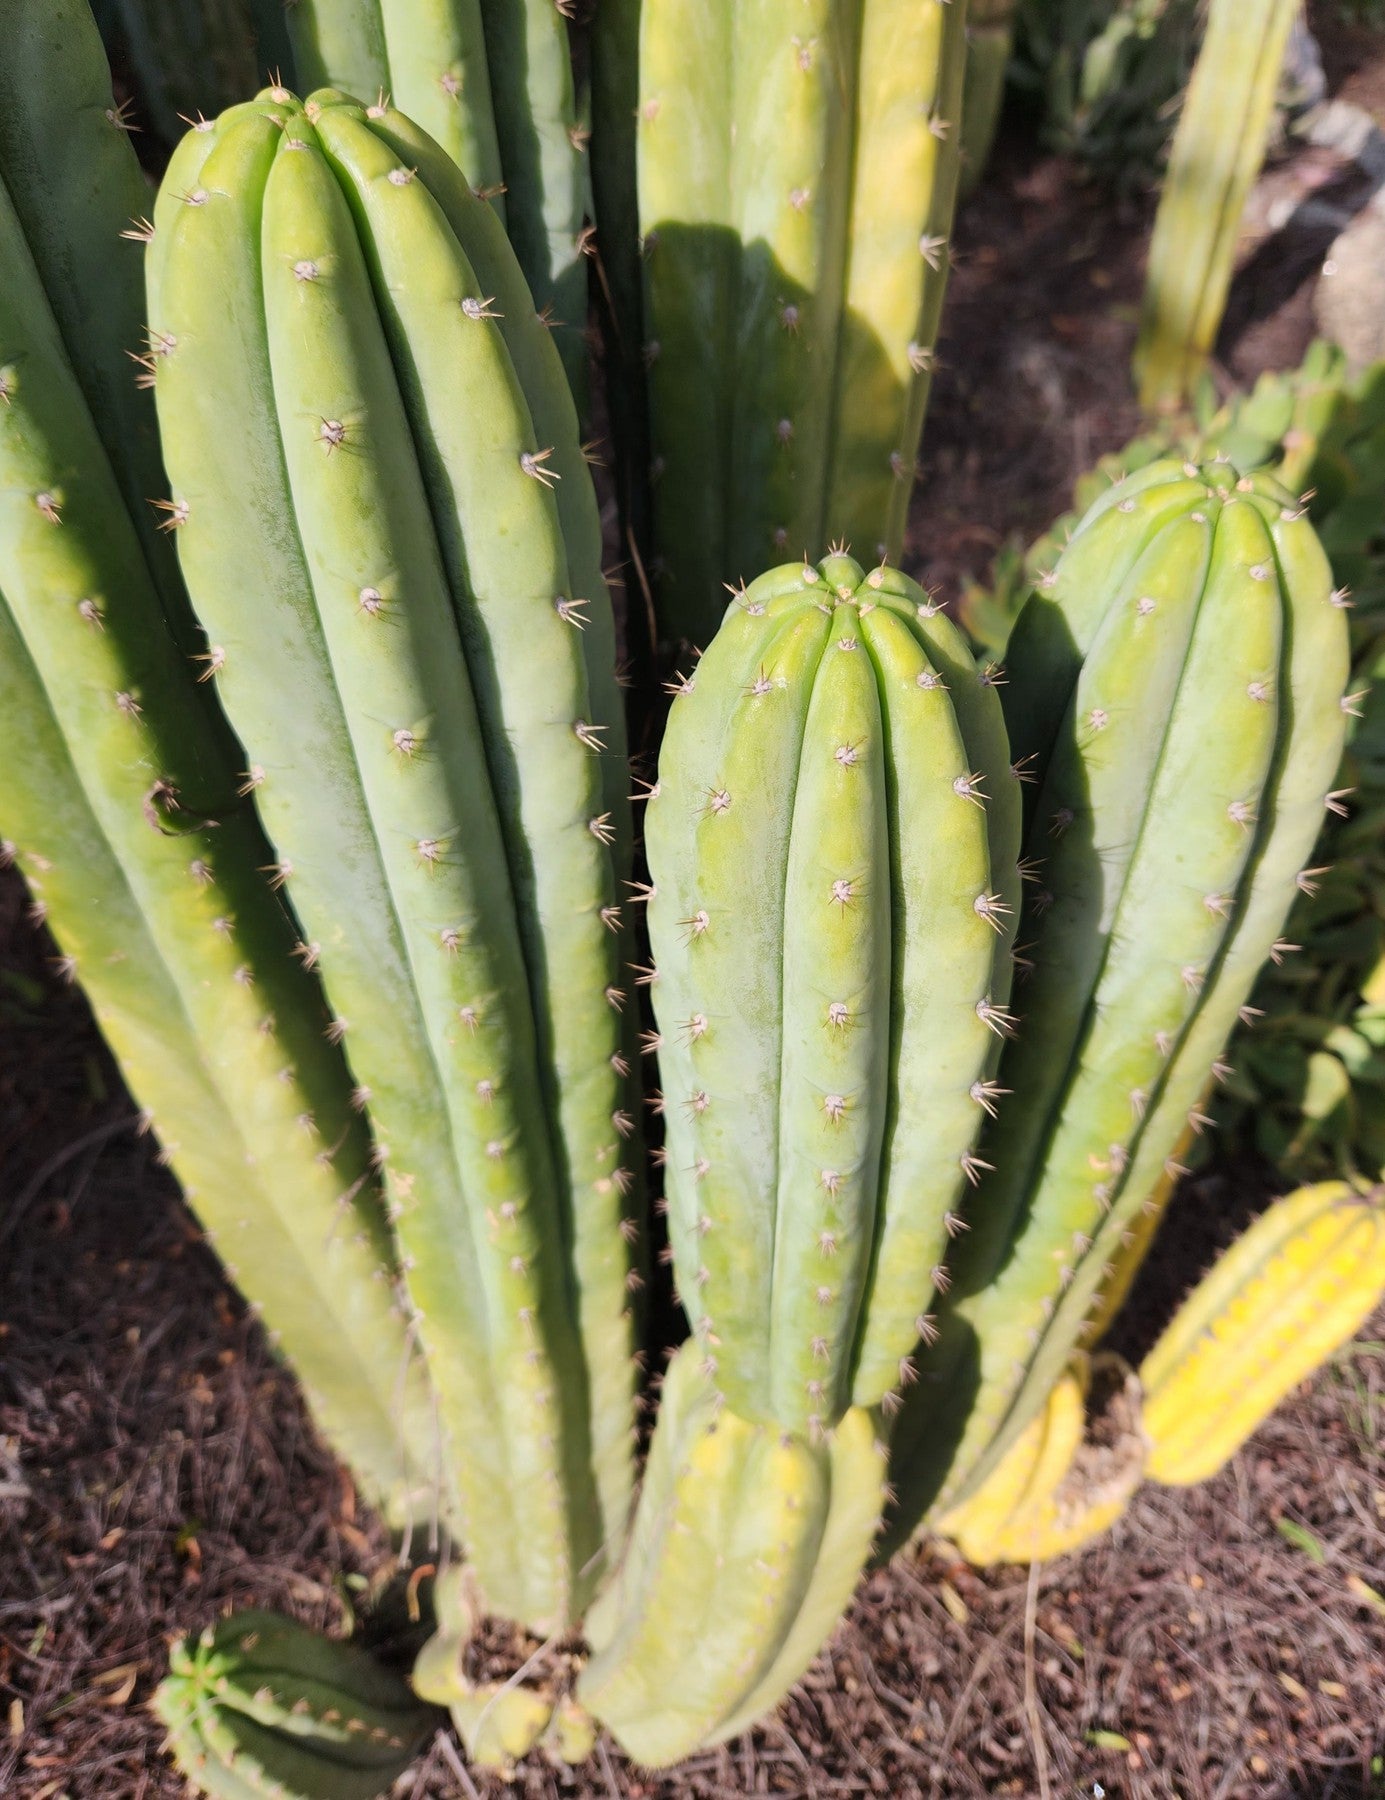 #EC323 EXACT Trichocereus Pachanoi TPQC Cactus Cuttings-Cactus - Large - Exact-The Succulent Source